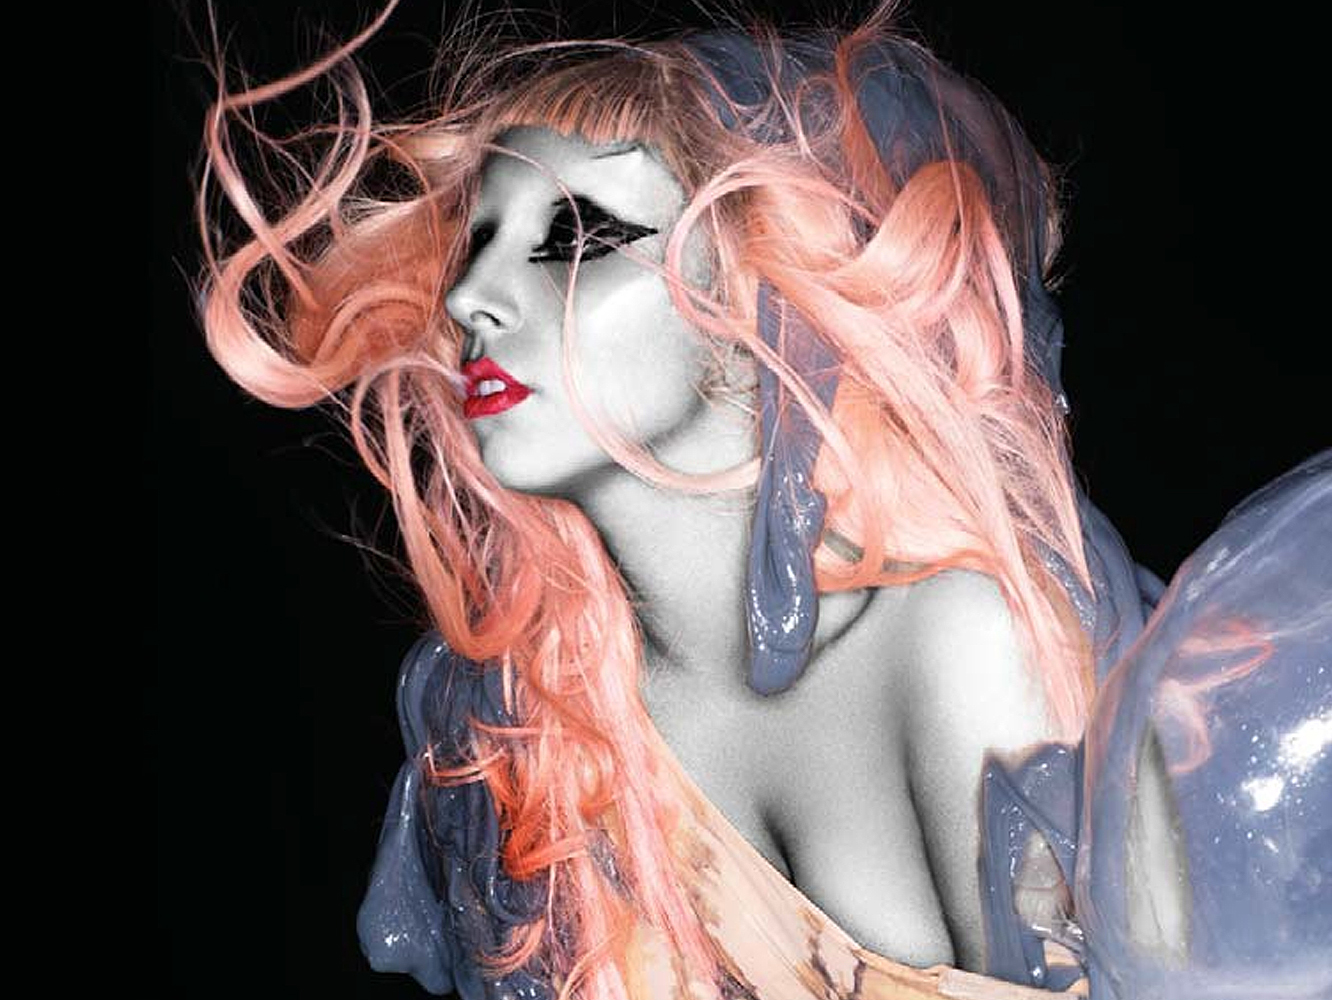  Lady Gaga anuncia la reedición de ‘Born This Way’ y relanza ‘Judas’ en la voz de Big Freedia